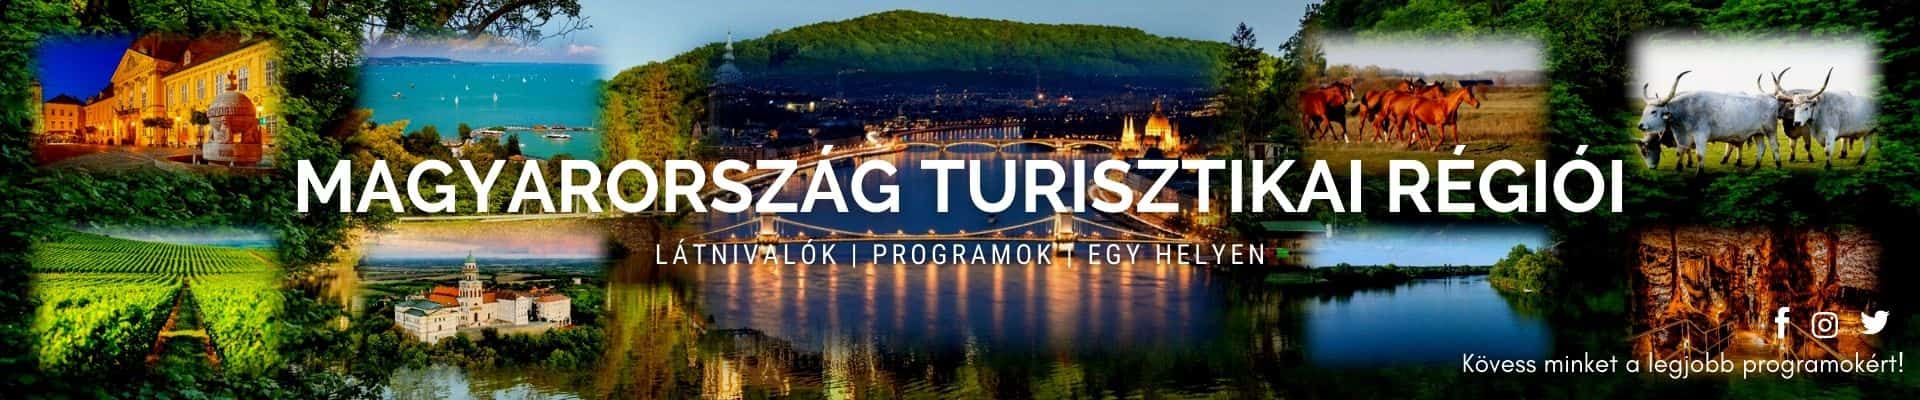 Magyarország turisztikai régiói